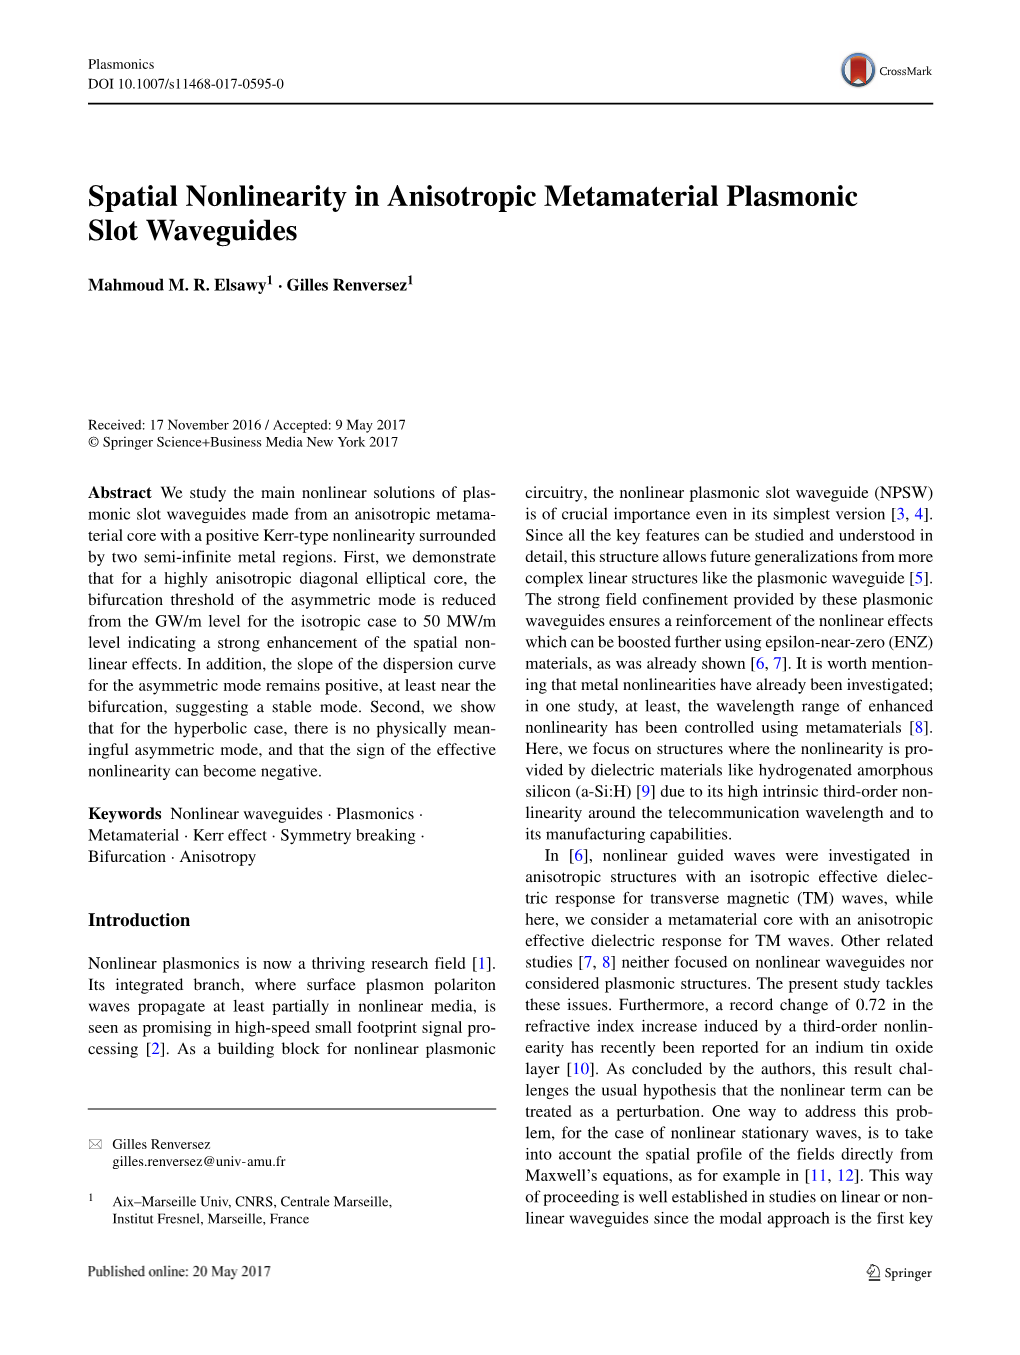 Spatial Nonlinearity in Anisotropic Metamaterial Plasmonic Slot Waveguides